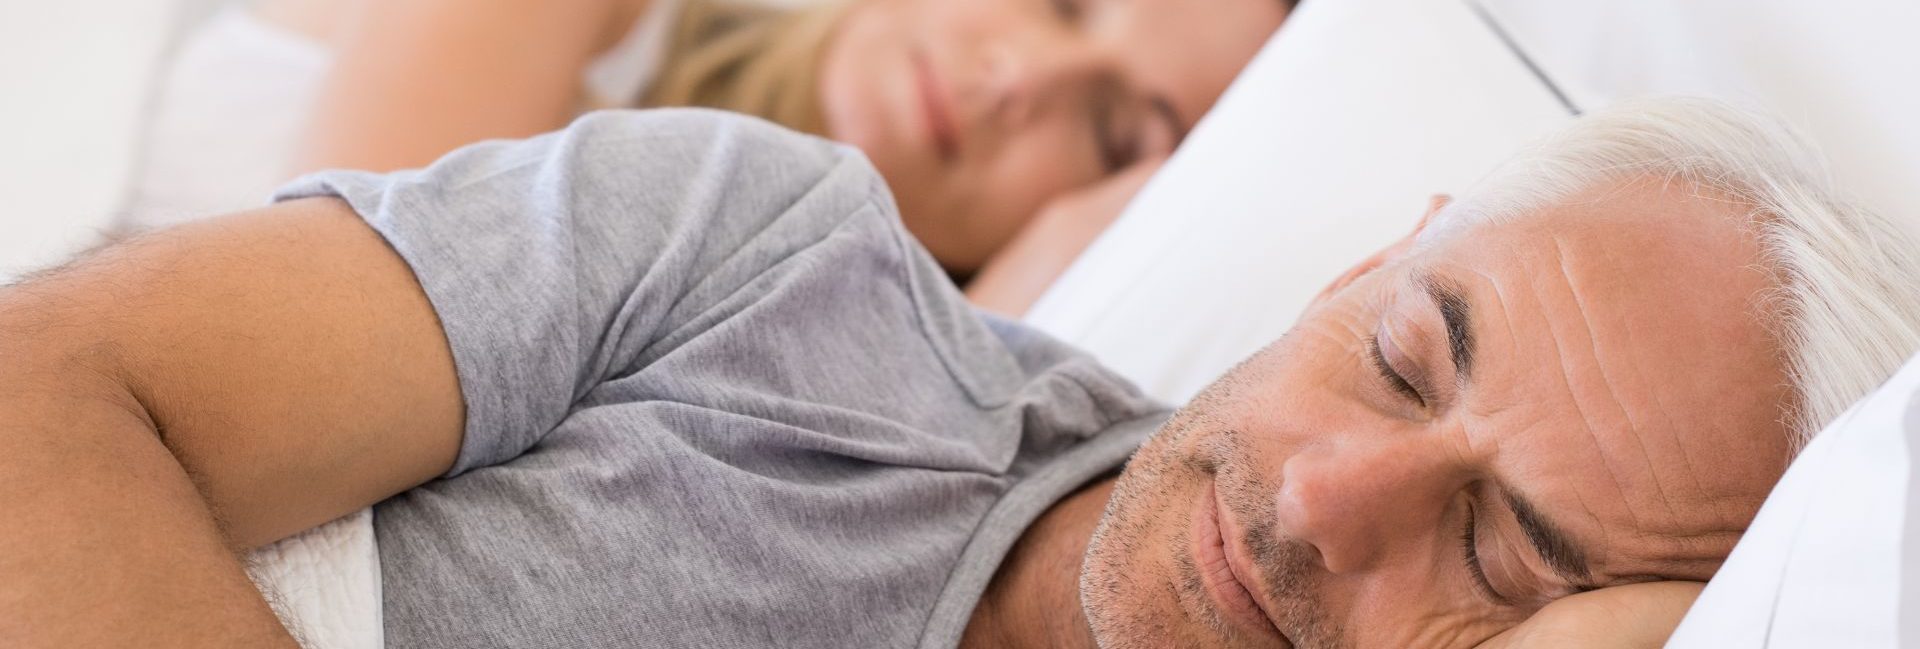 tratamento mais eficaz para apneia do sono